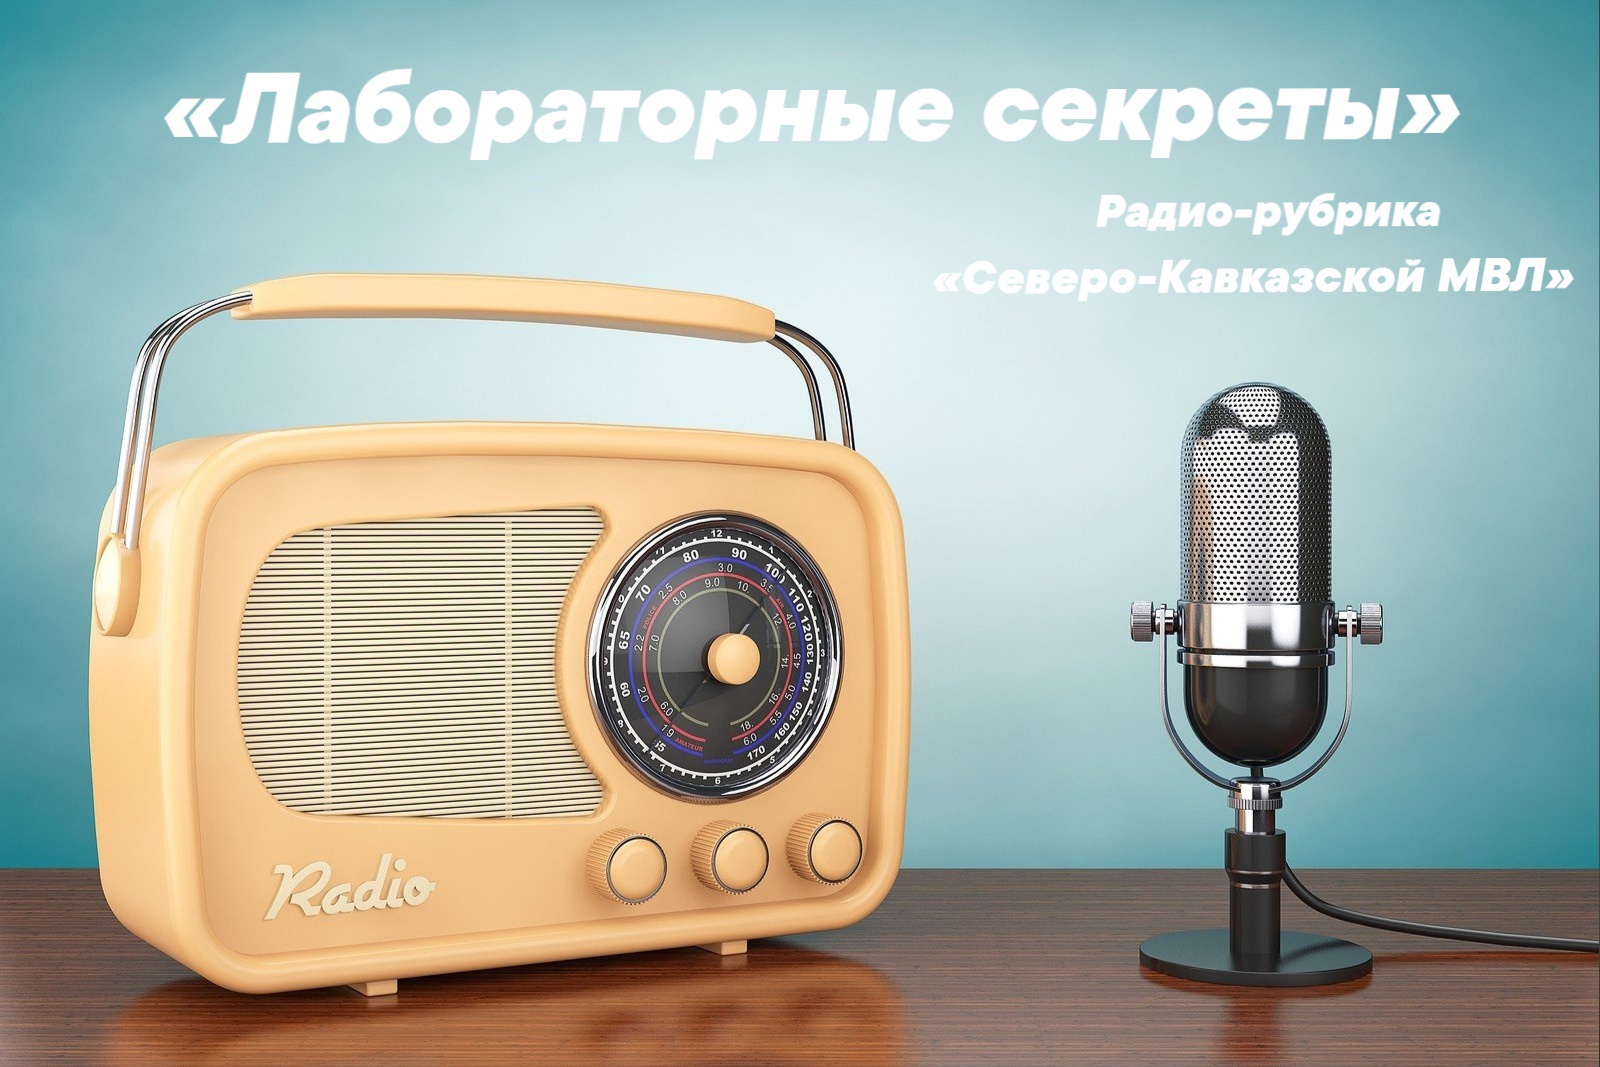 Стартовала собственная рубрика «Северо-Кавказской МВЛ» на радио